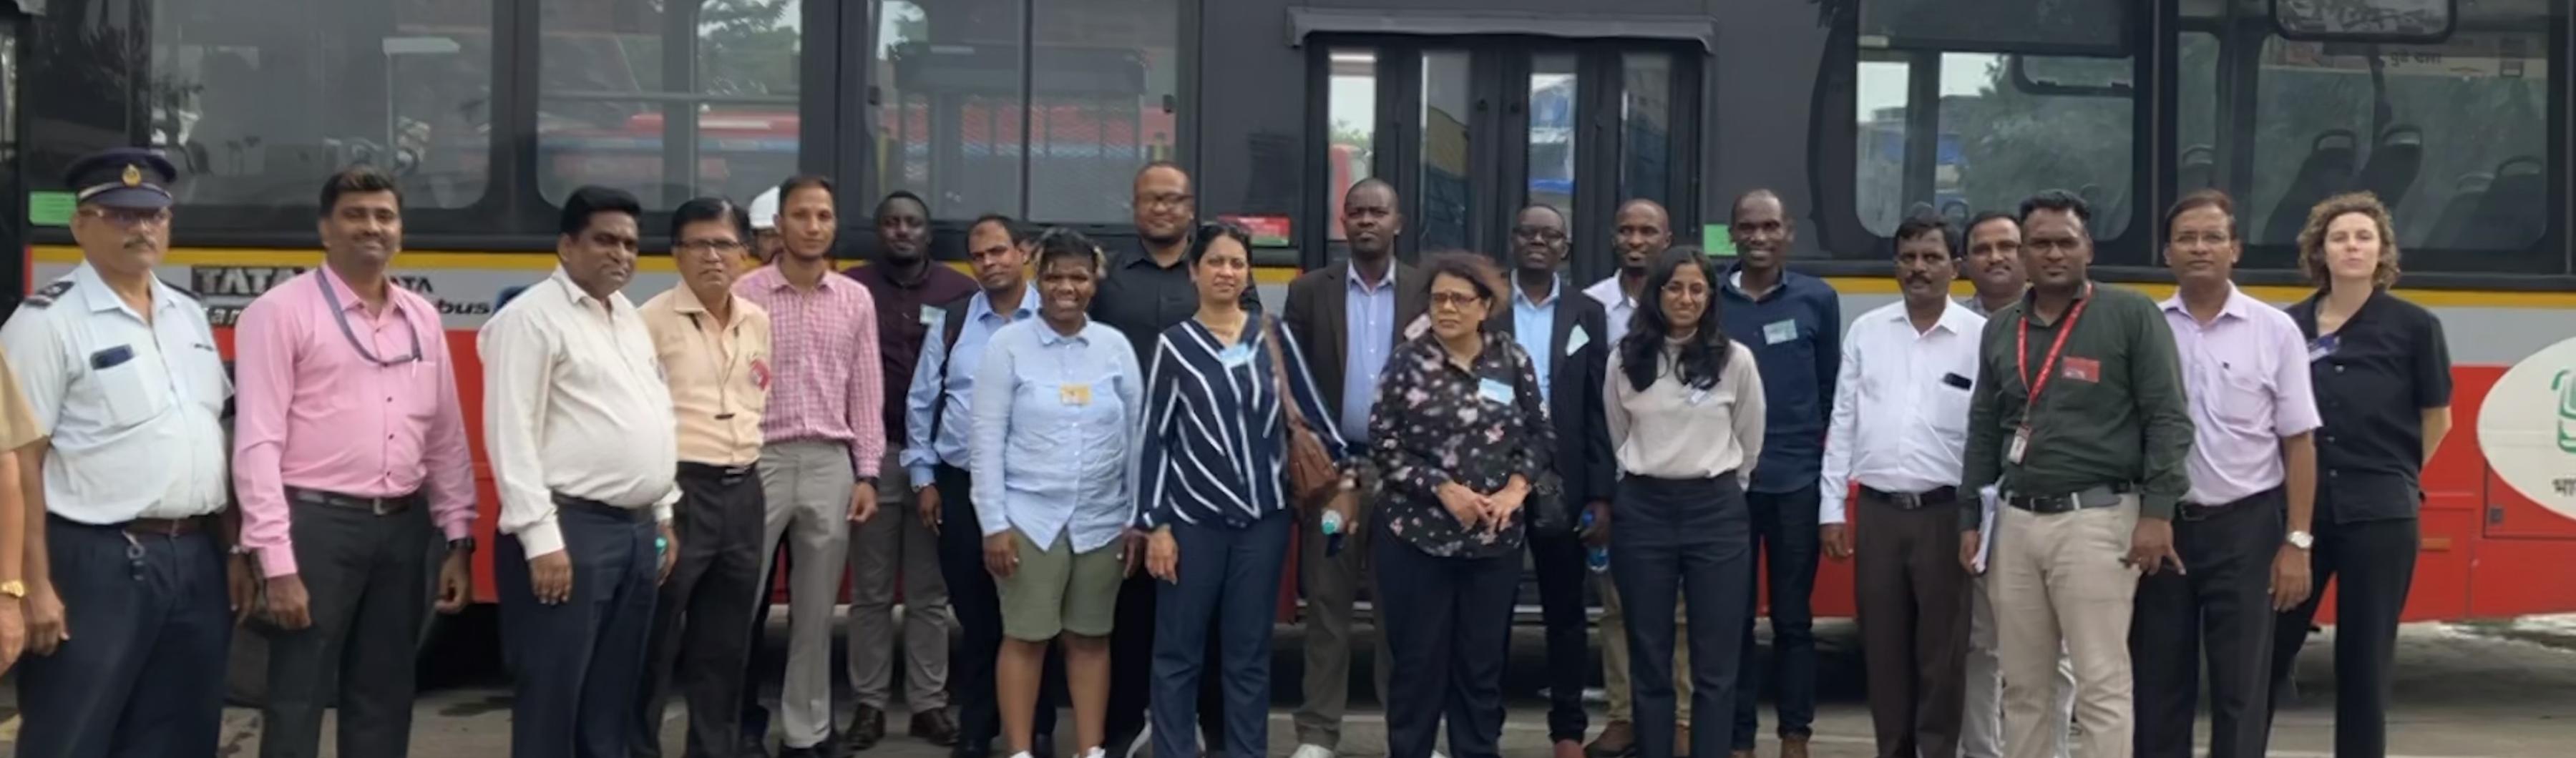 Les participants à l'échange Peer to Peer du site UrbanShift devant un bus à émission zéro à Mumbai